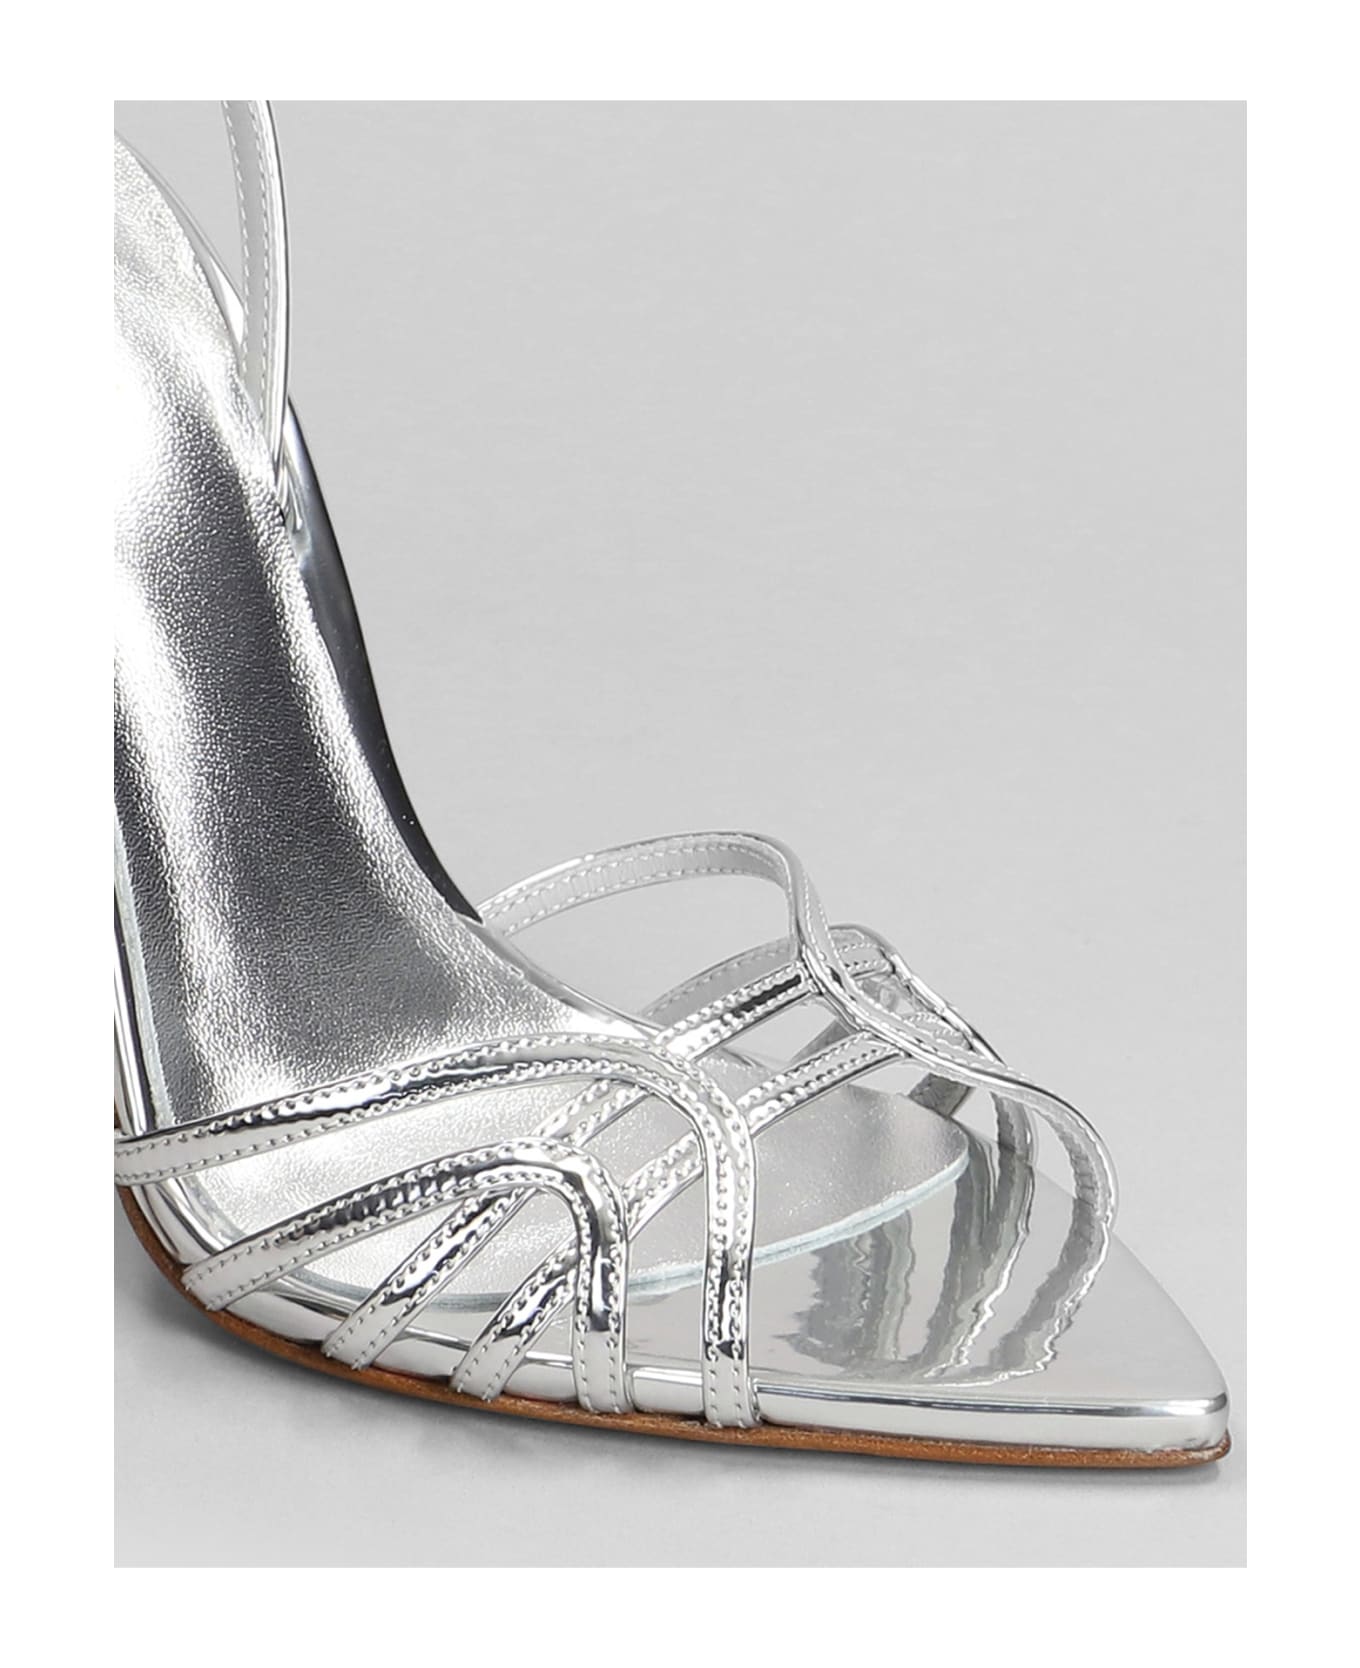 Le Silla Bella Sandals In Silver Leather - silver